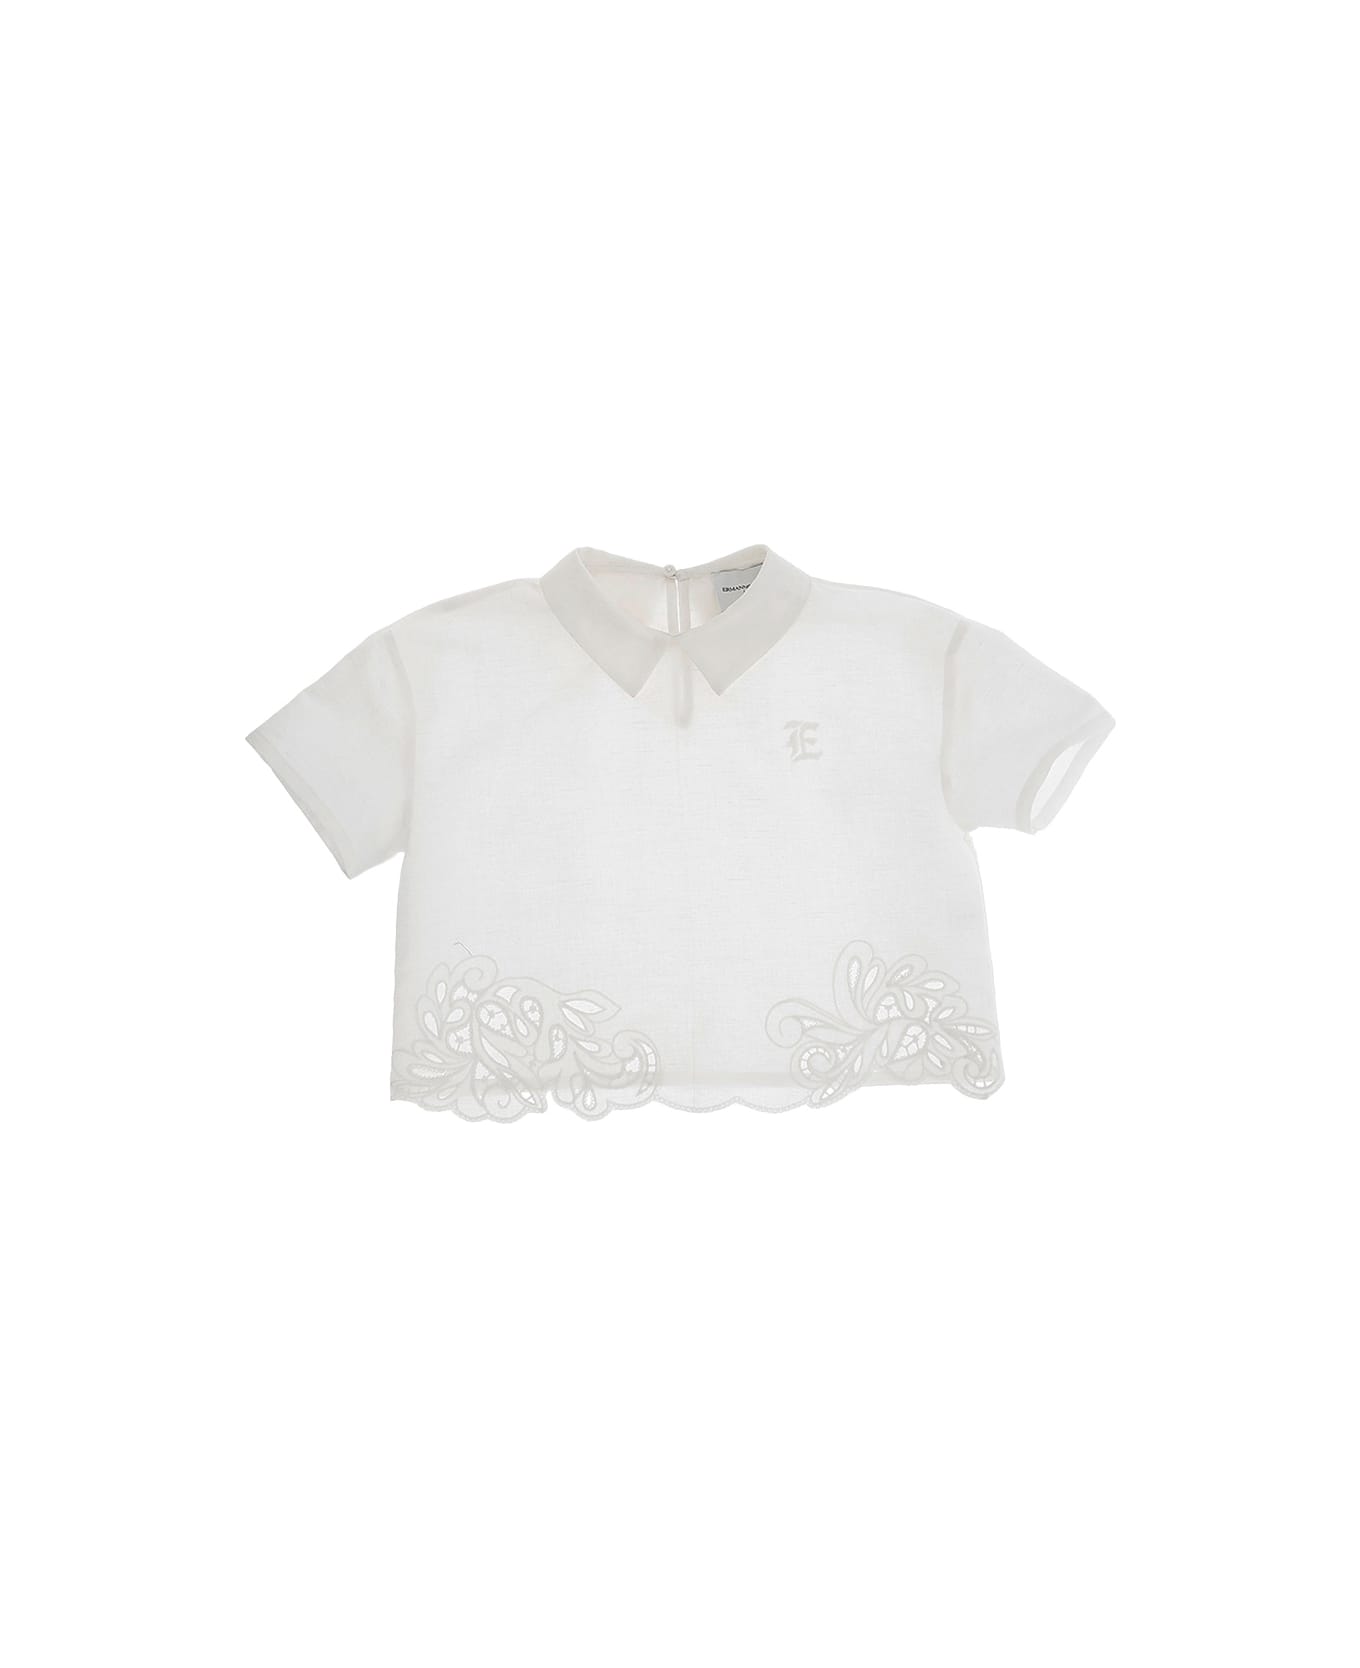 Ermanno Scervino Junior White Top With Embroidery - White